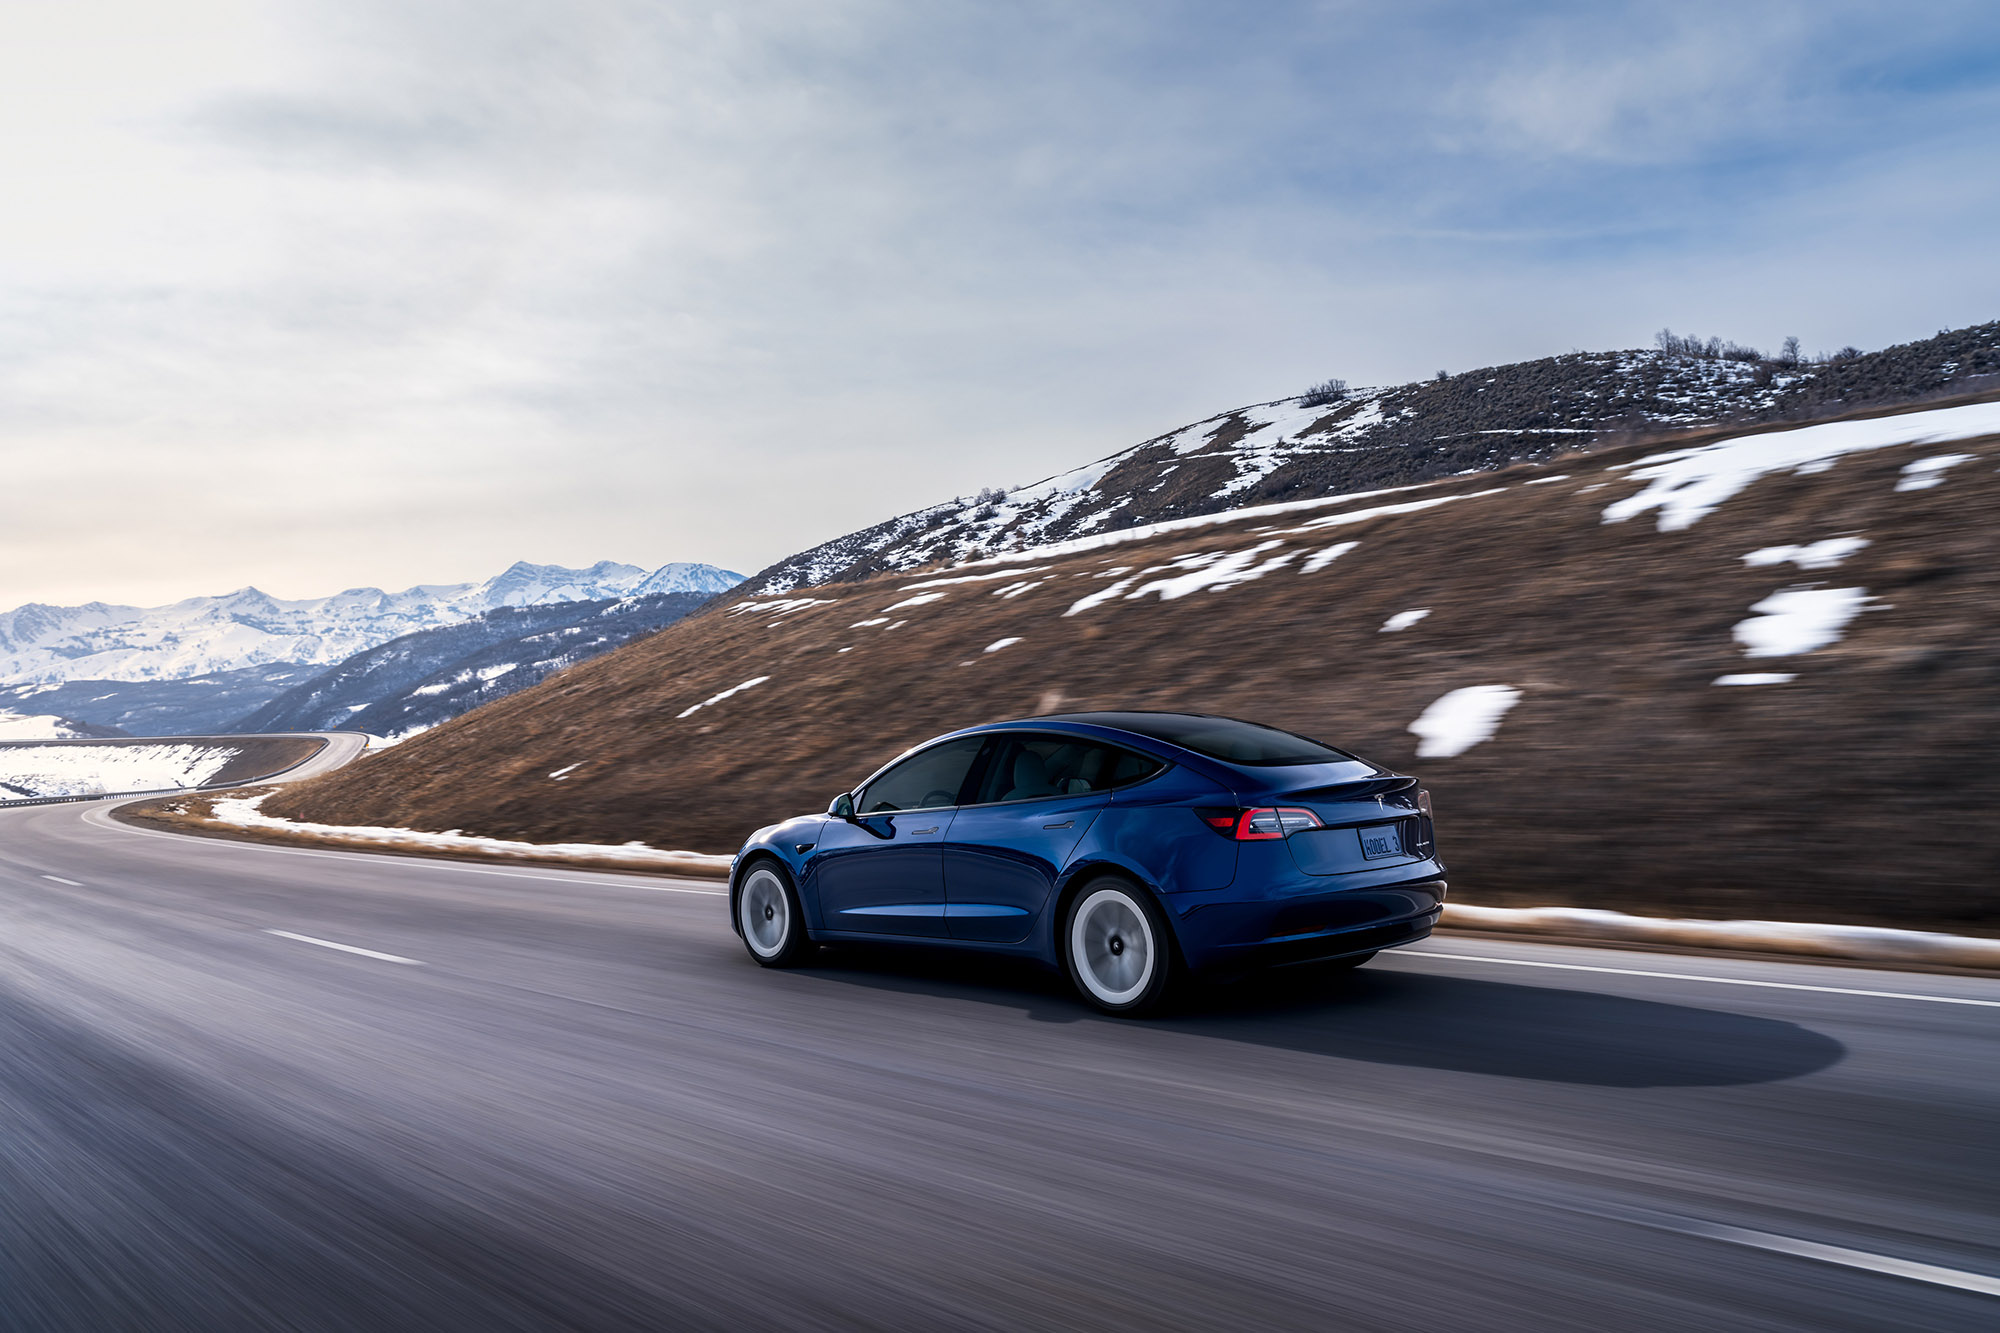 Tesla Model 3 in blue driving along a winding alpine road